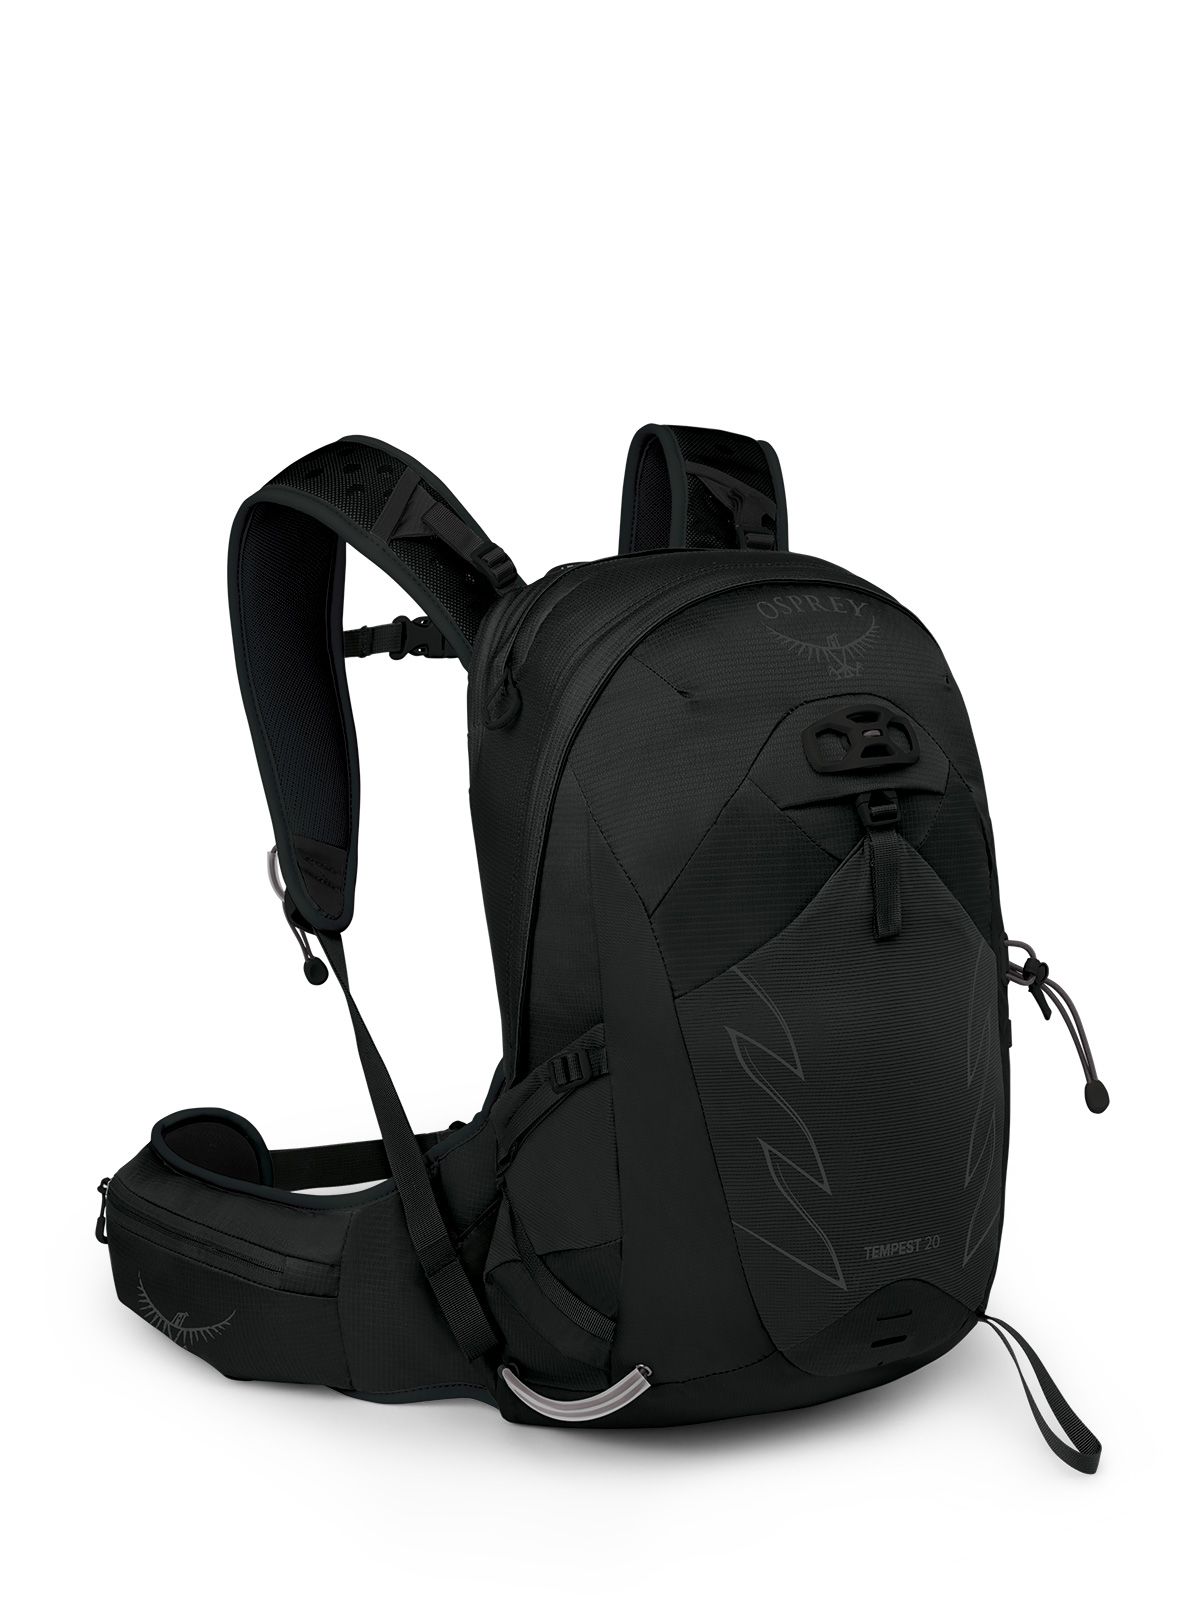 Image of Osprey Tempset Hiking Backpack 20L